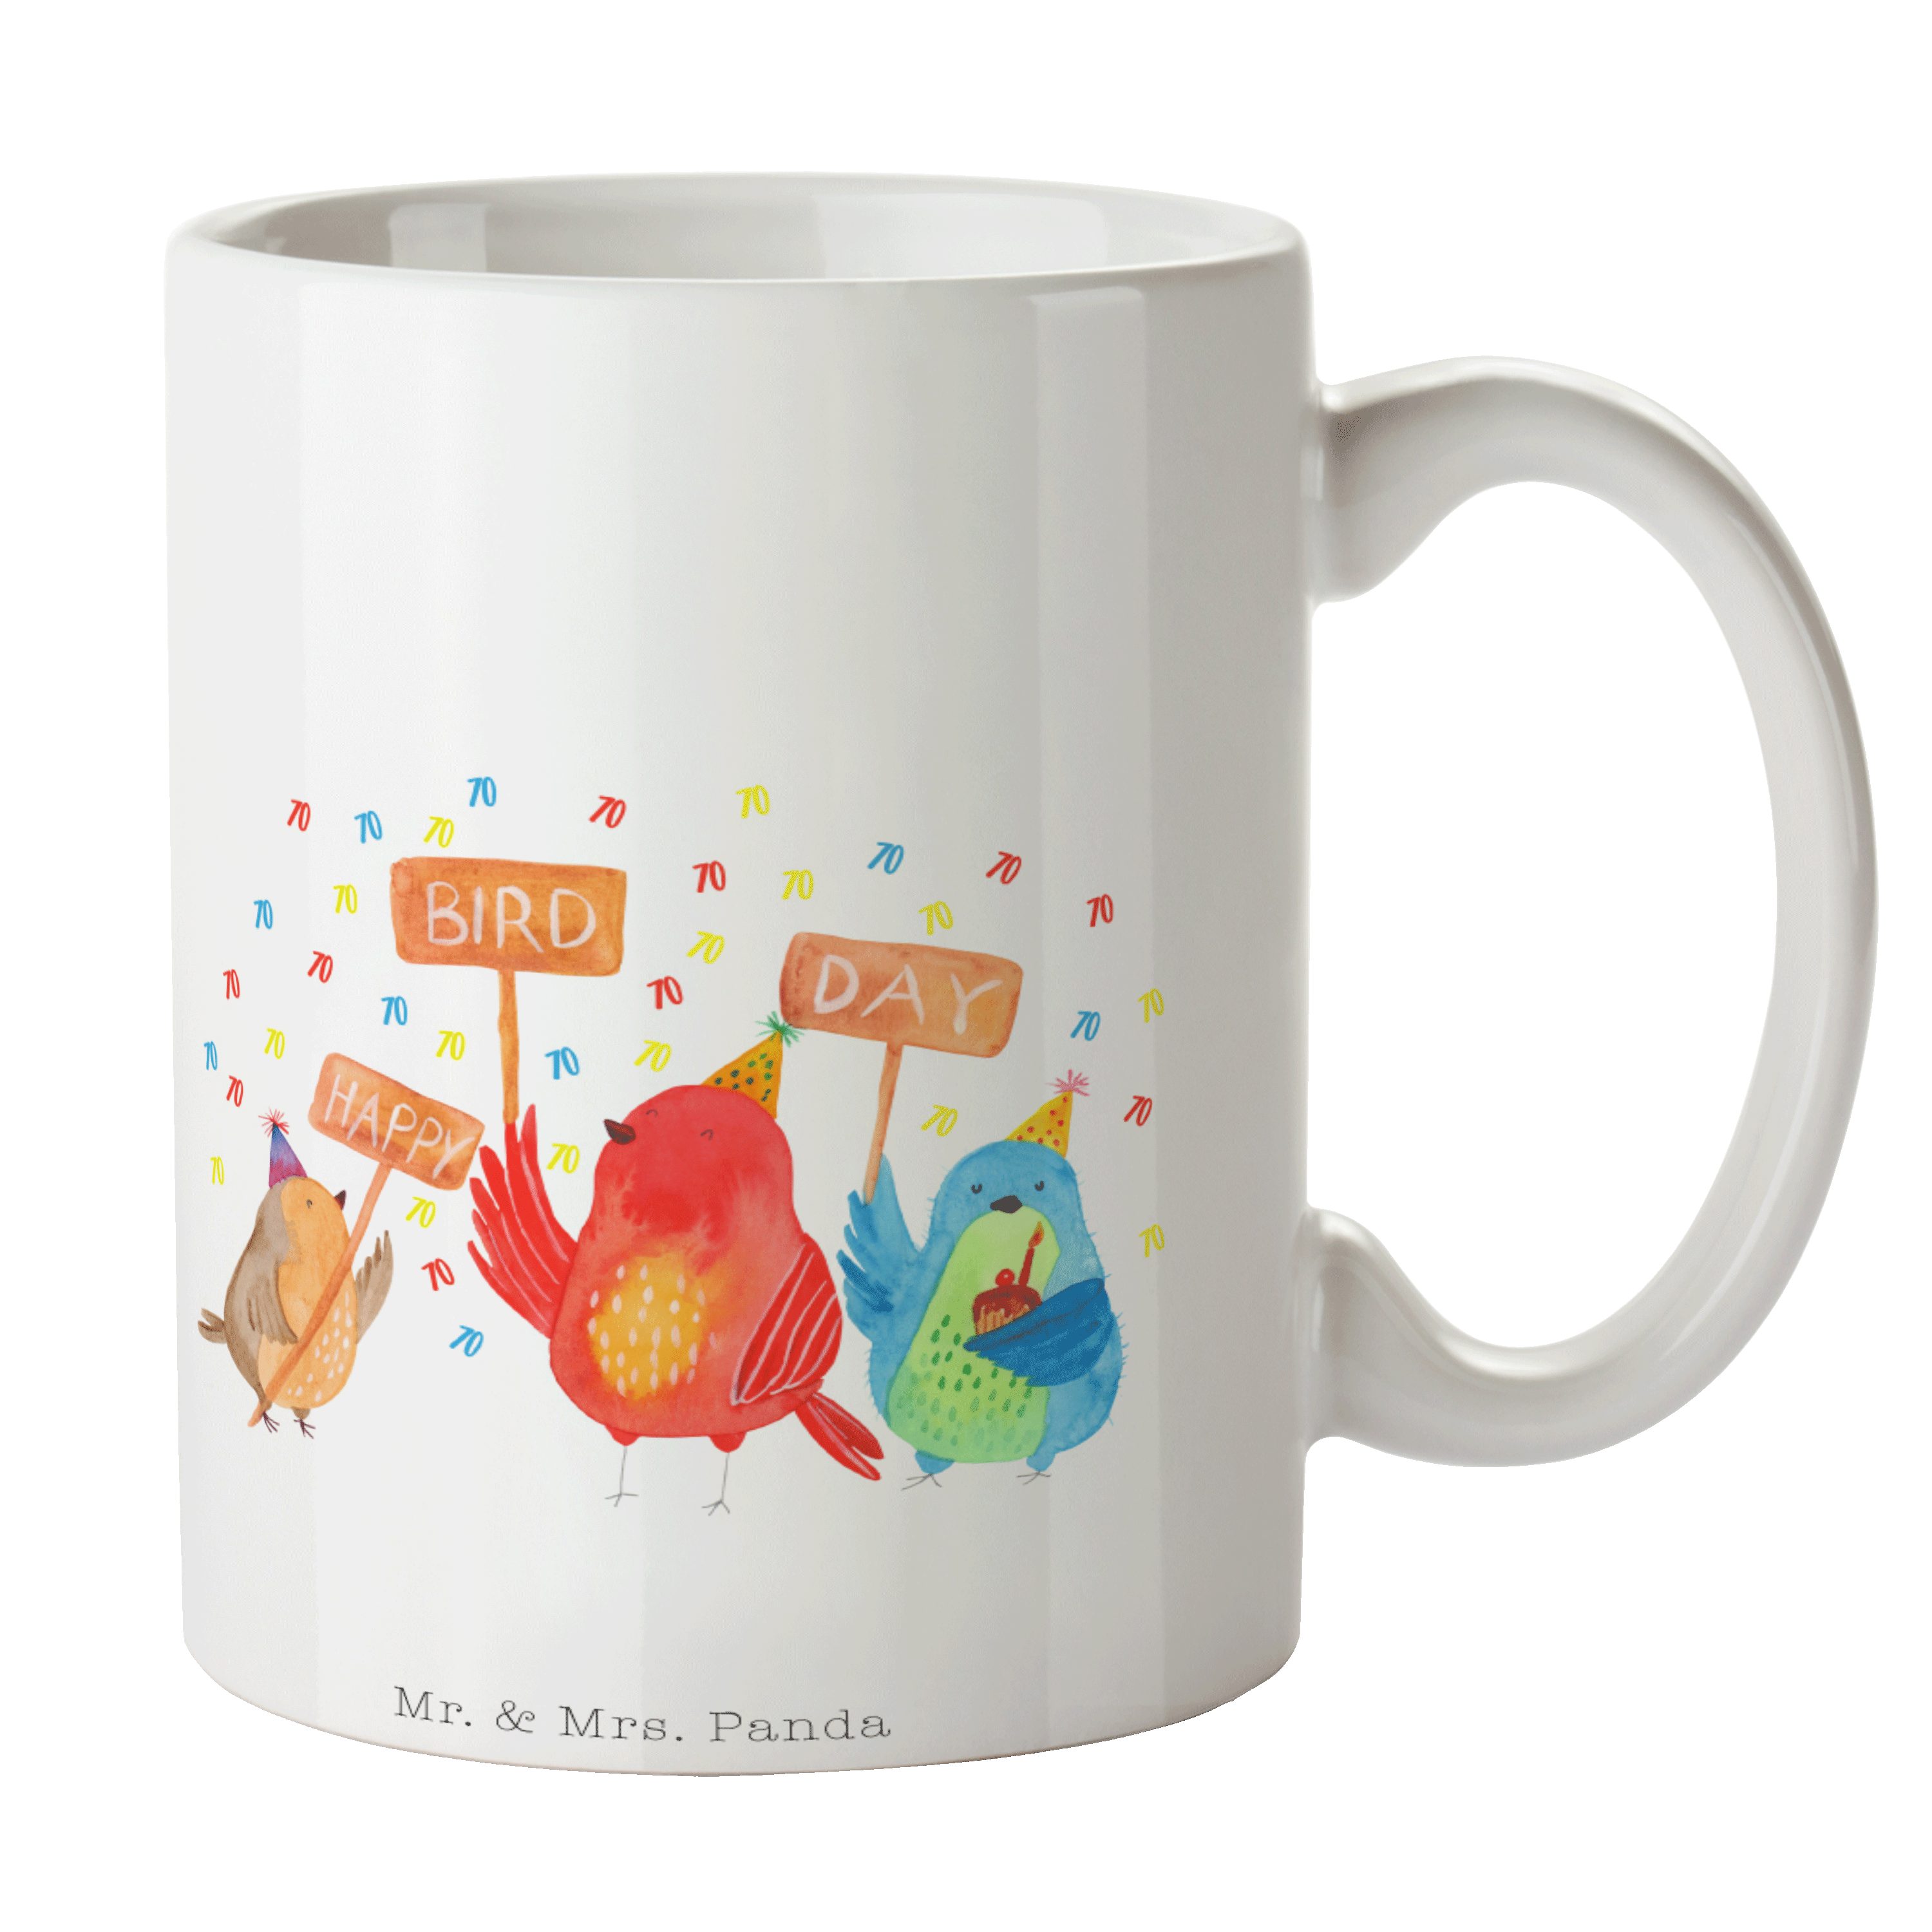 Mr. & Mrs. Panda Tasse 70. Geburtstag Happy Bird Day - Weiß - Geschenk, Geschenk Tasse, Teet, Keramik